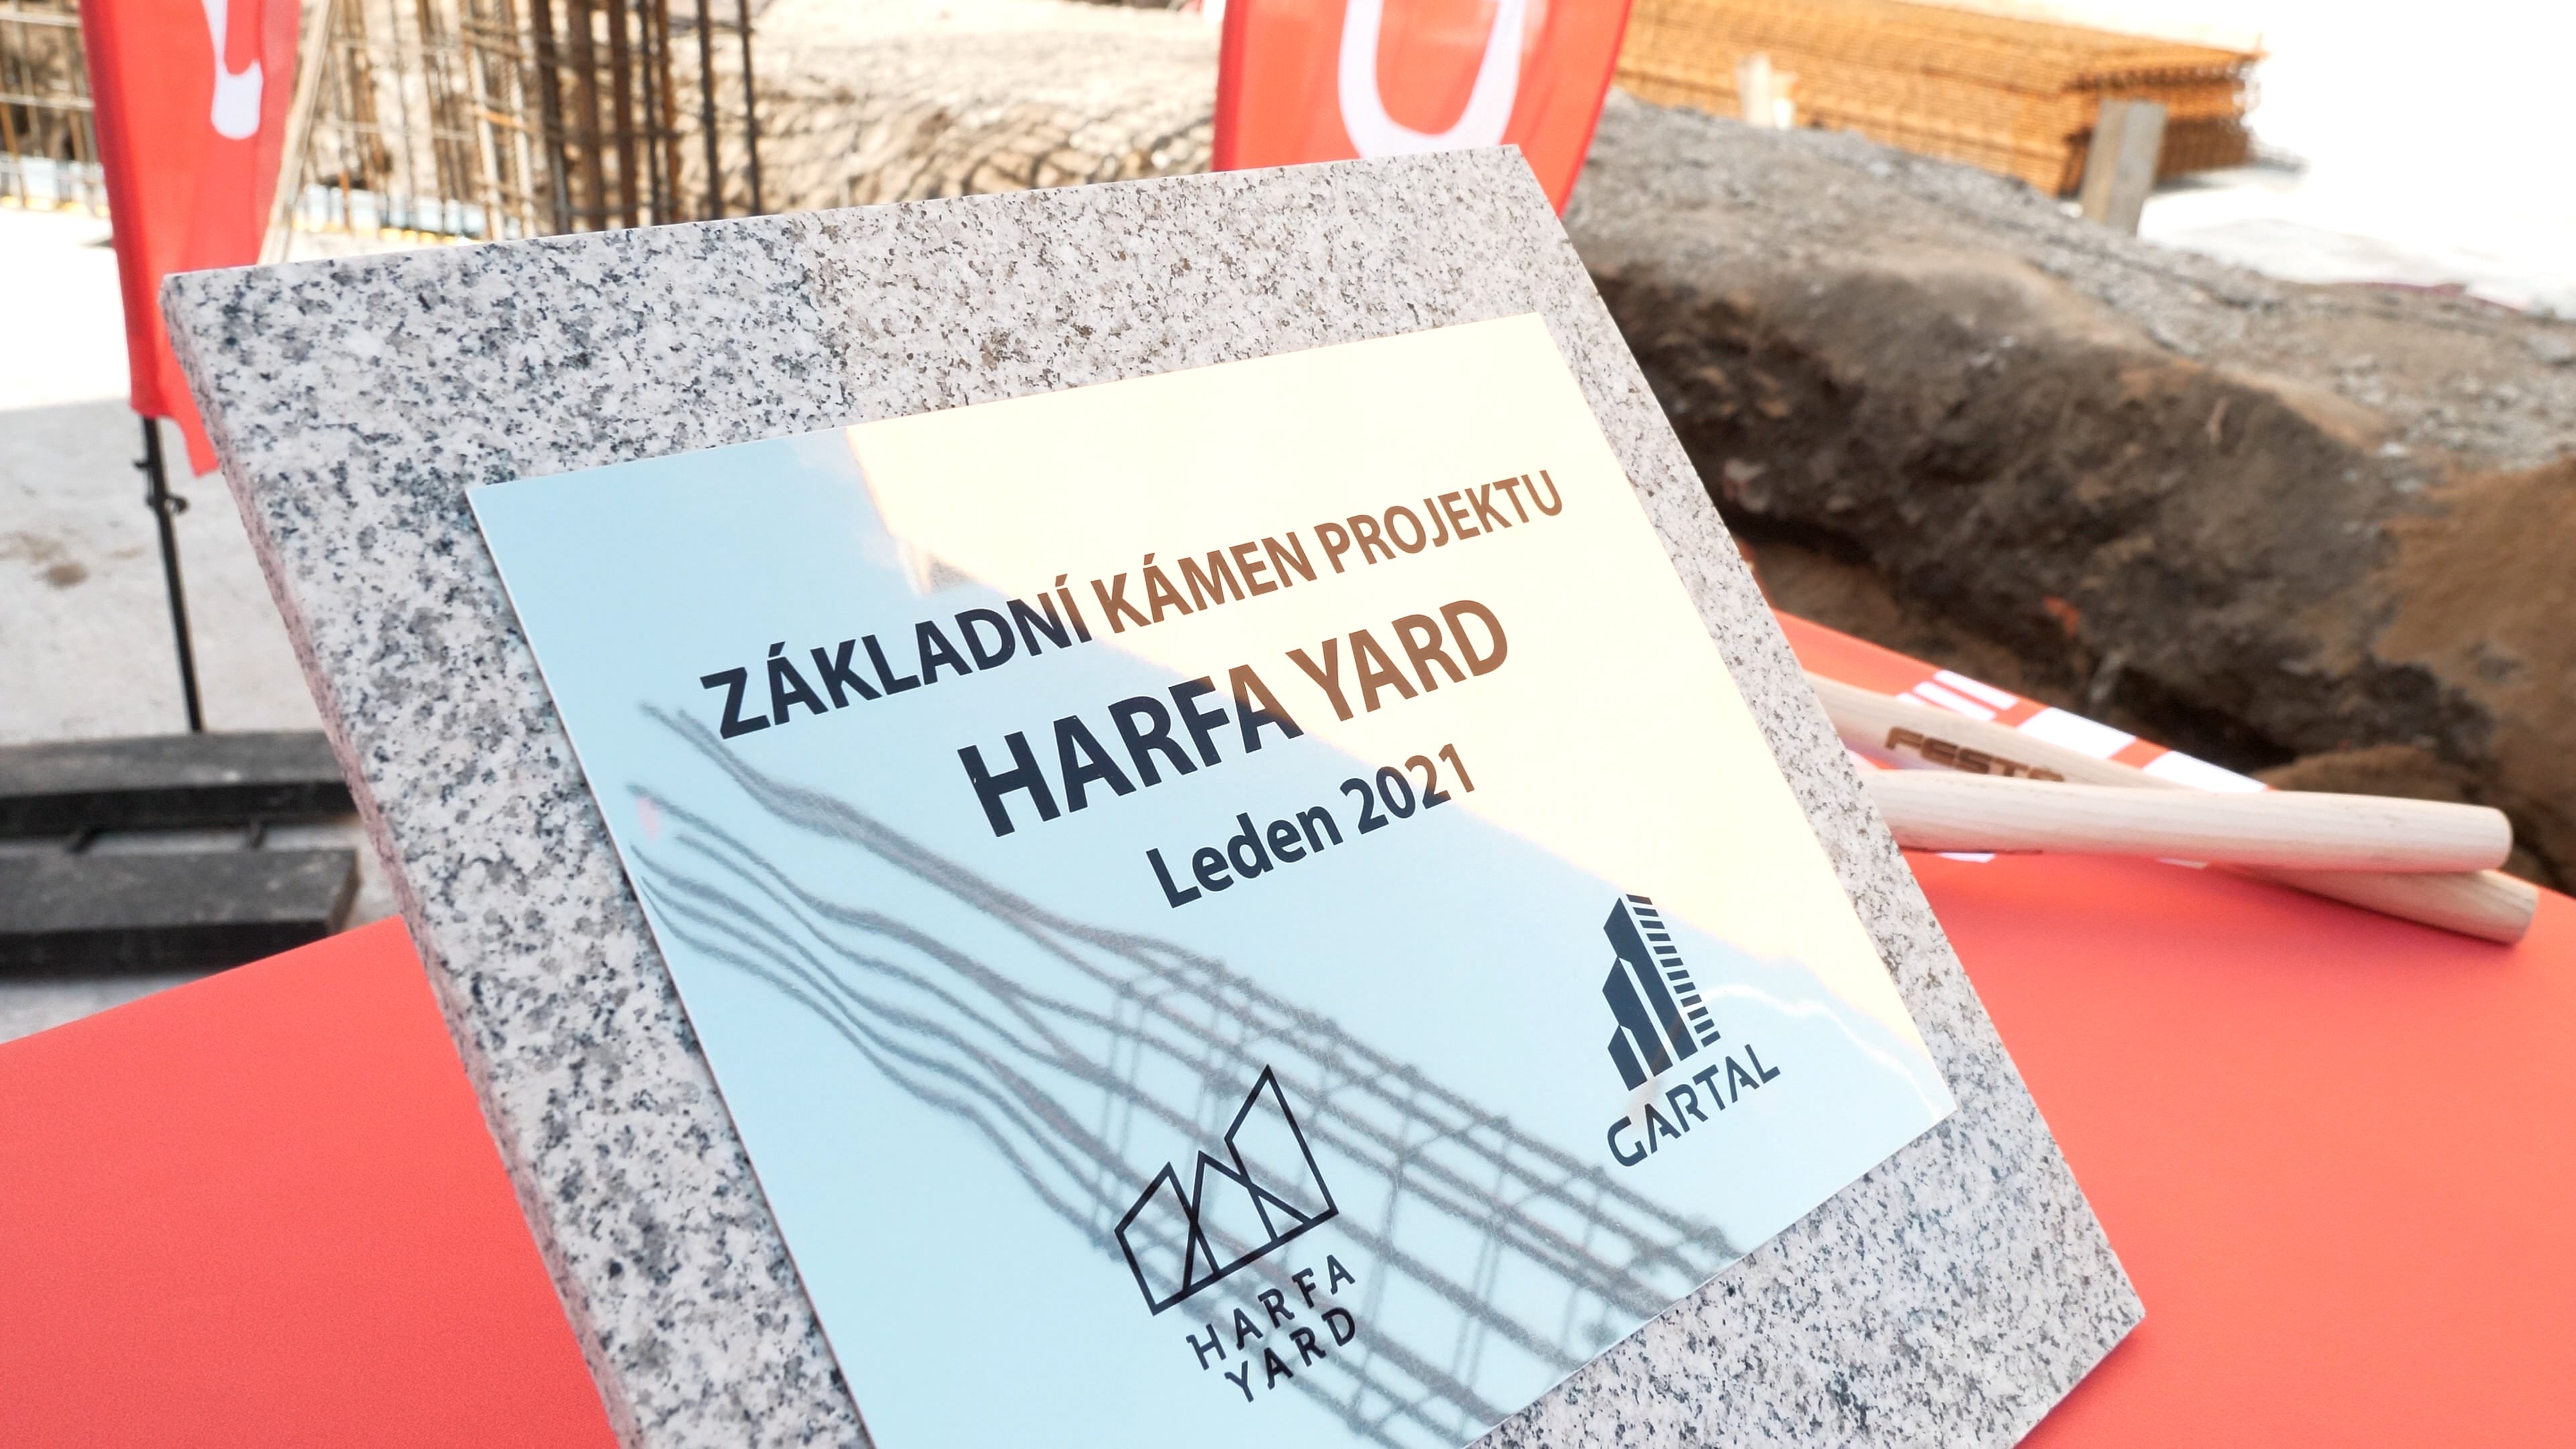 Закладка первого камня проекта Harfa Yard 